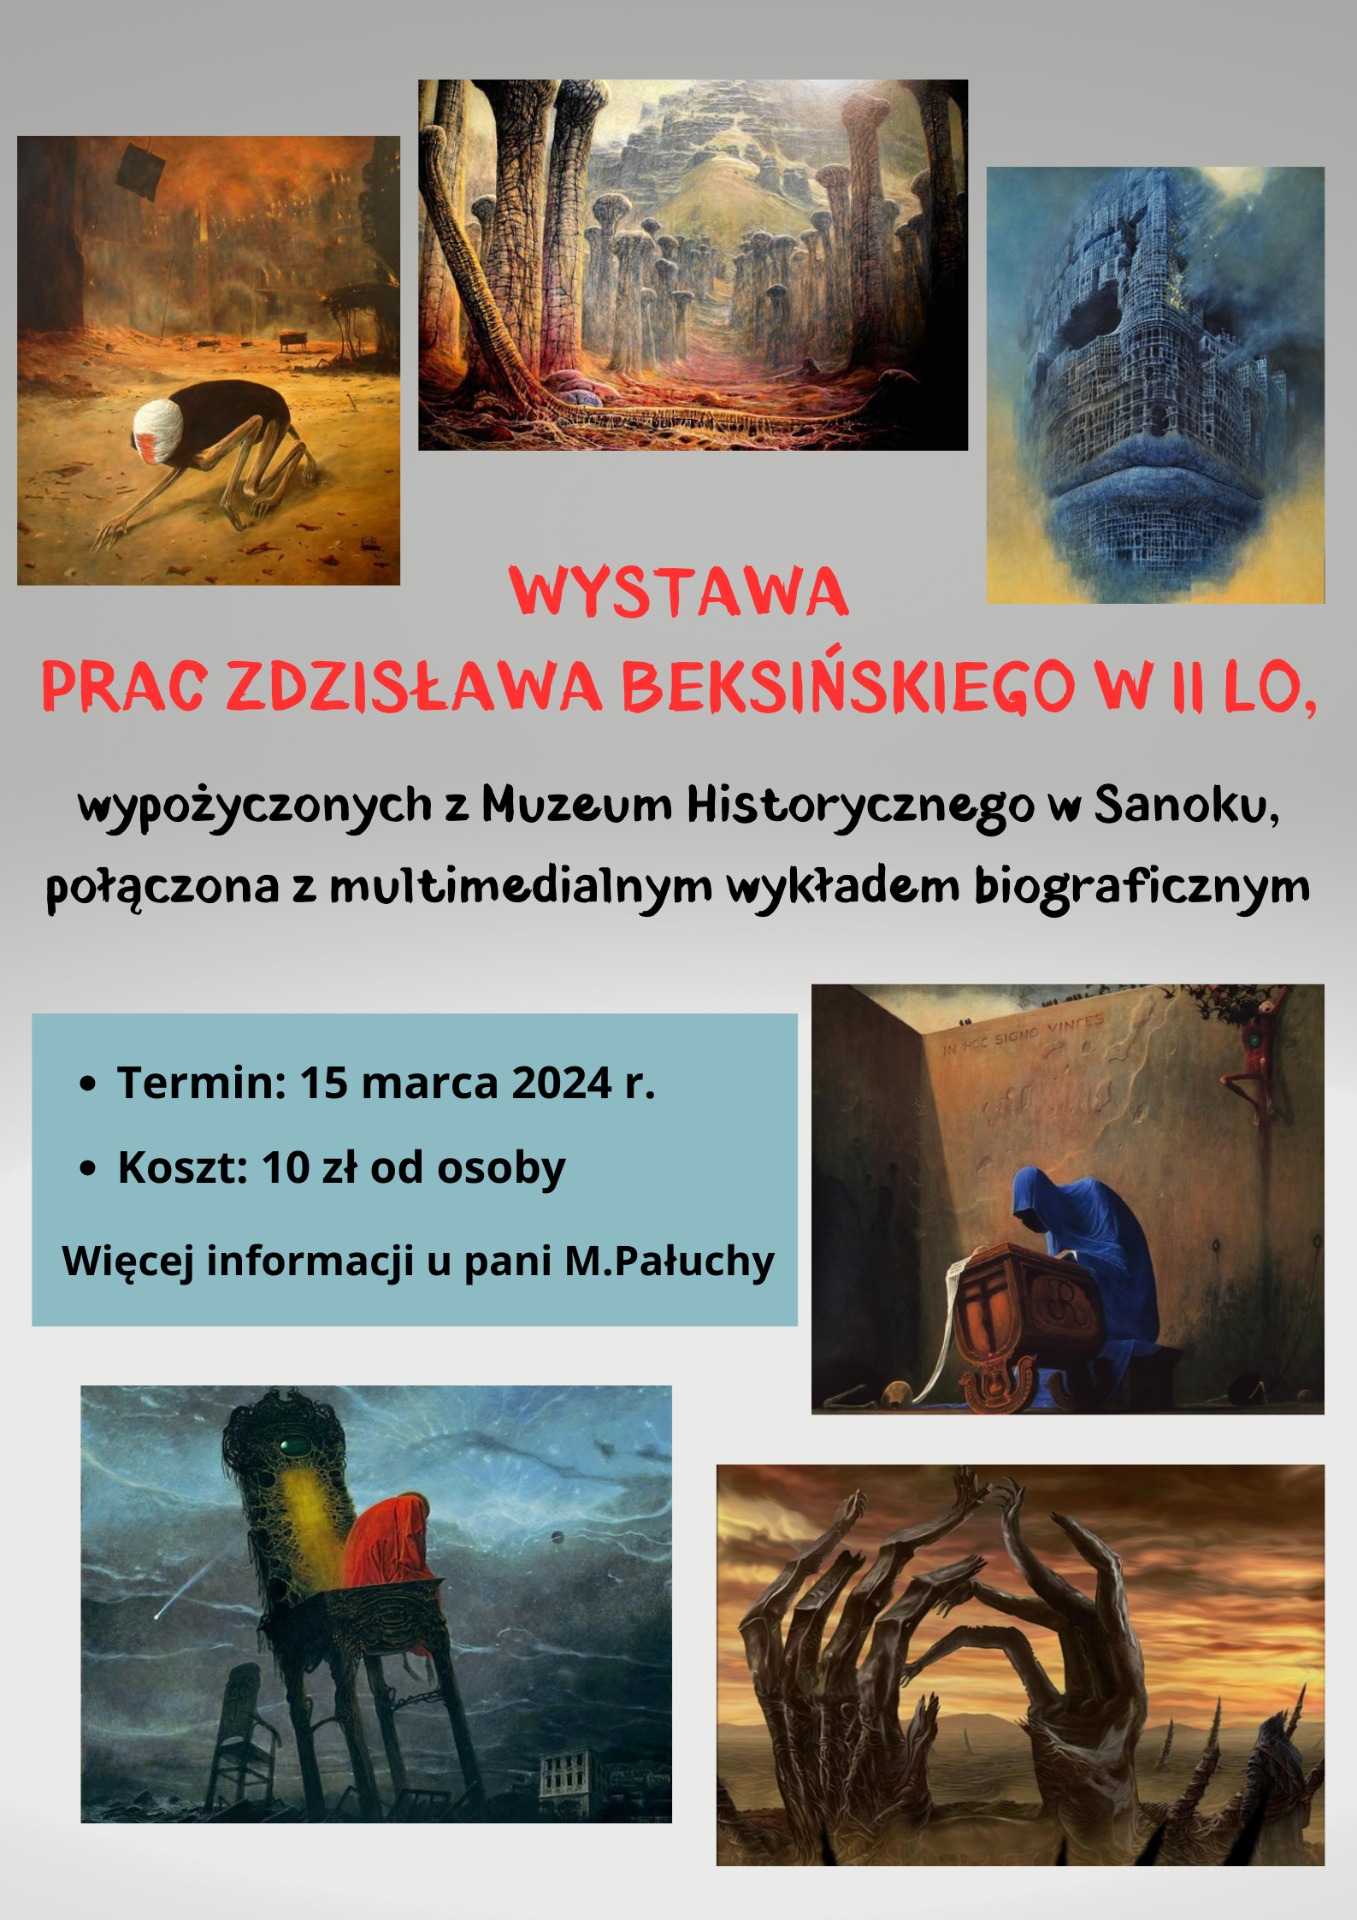 Wystawa prac Zdzisława Beksińskiego, wypożyczonych z Muzeum Historycznego w Sanoku, połączona z multimedialnym wykładem biograficznym - 15 marca 2024 r, koszt 10 zł od osoby